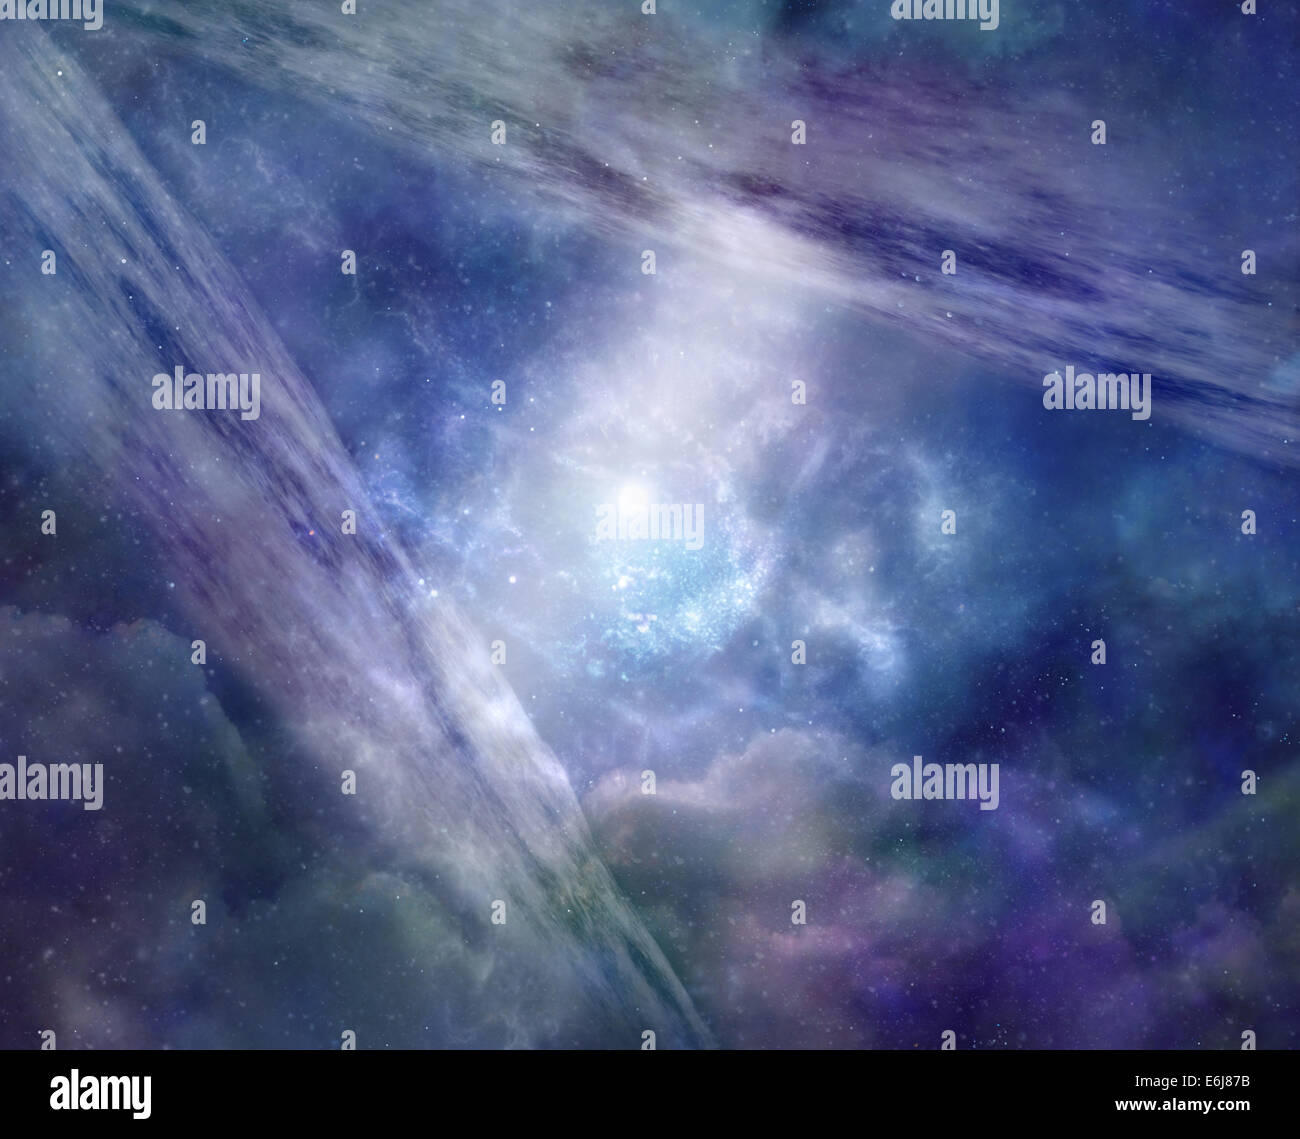 Universo paralelo - fondo azul Deep Space mostrando dos aviones galaxy uno enfrente del otro, conectados por un eje de la luz Foto de stock